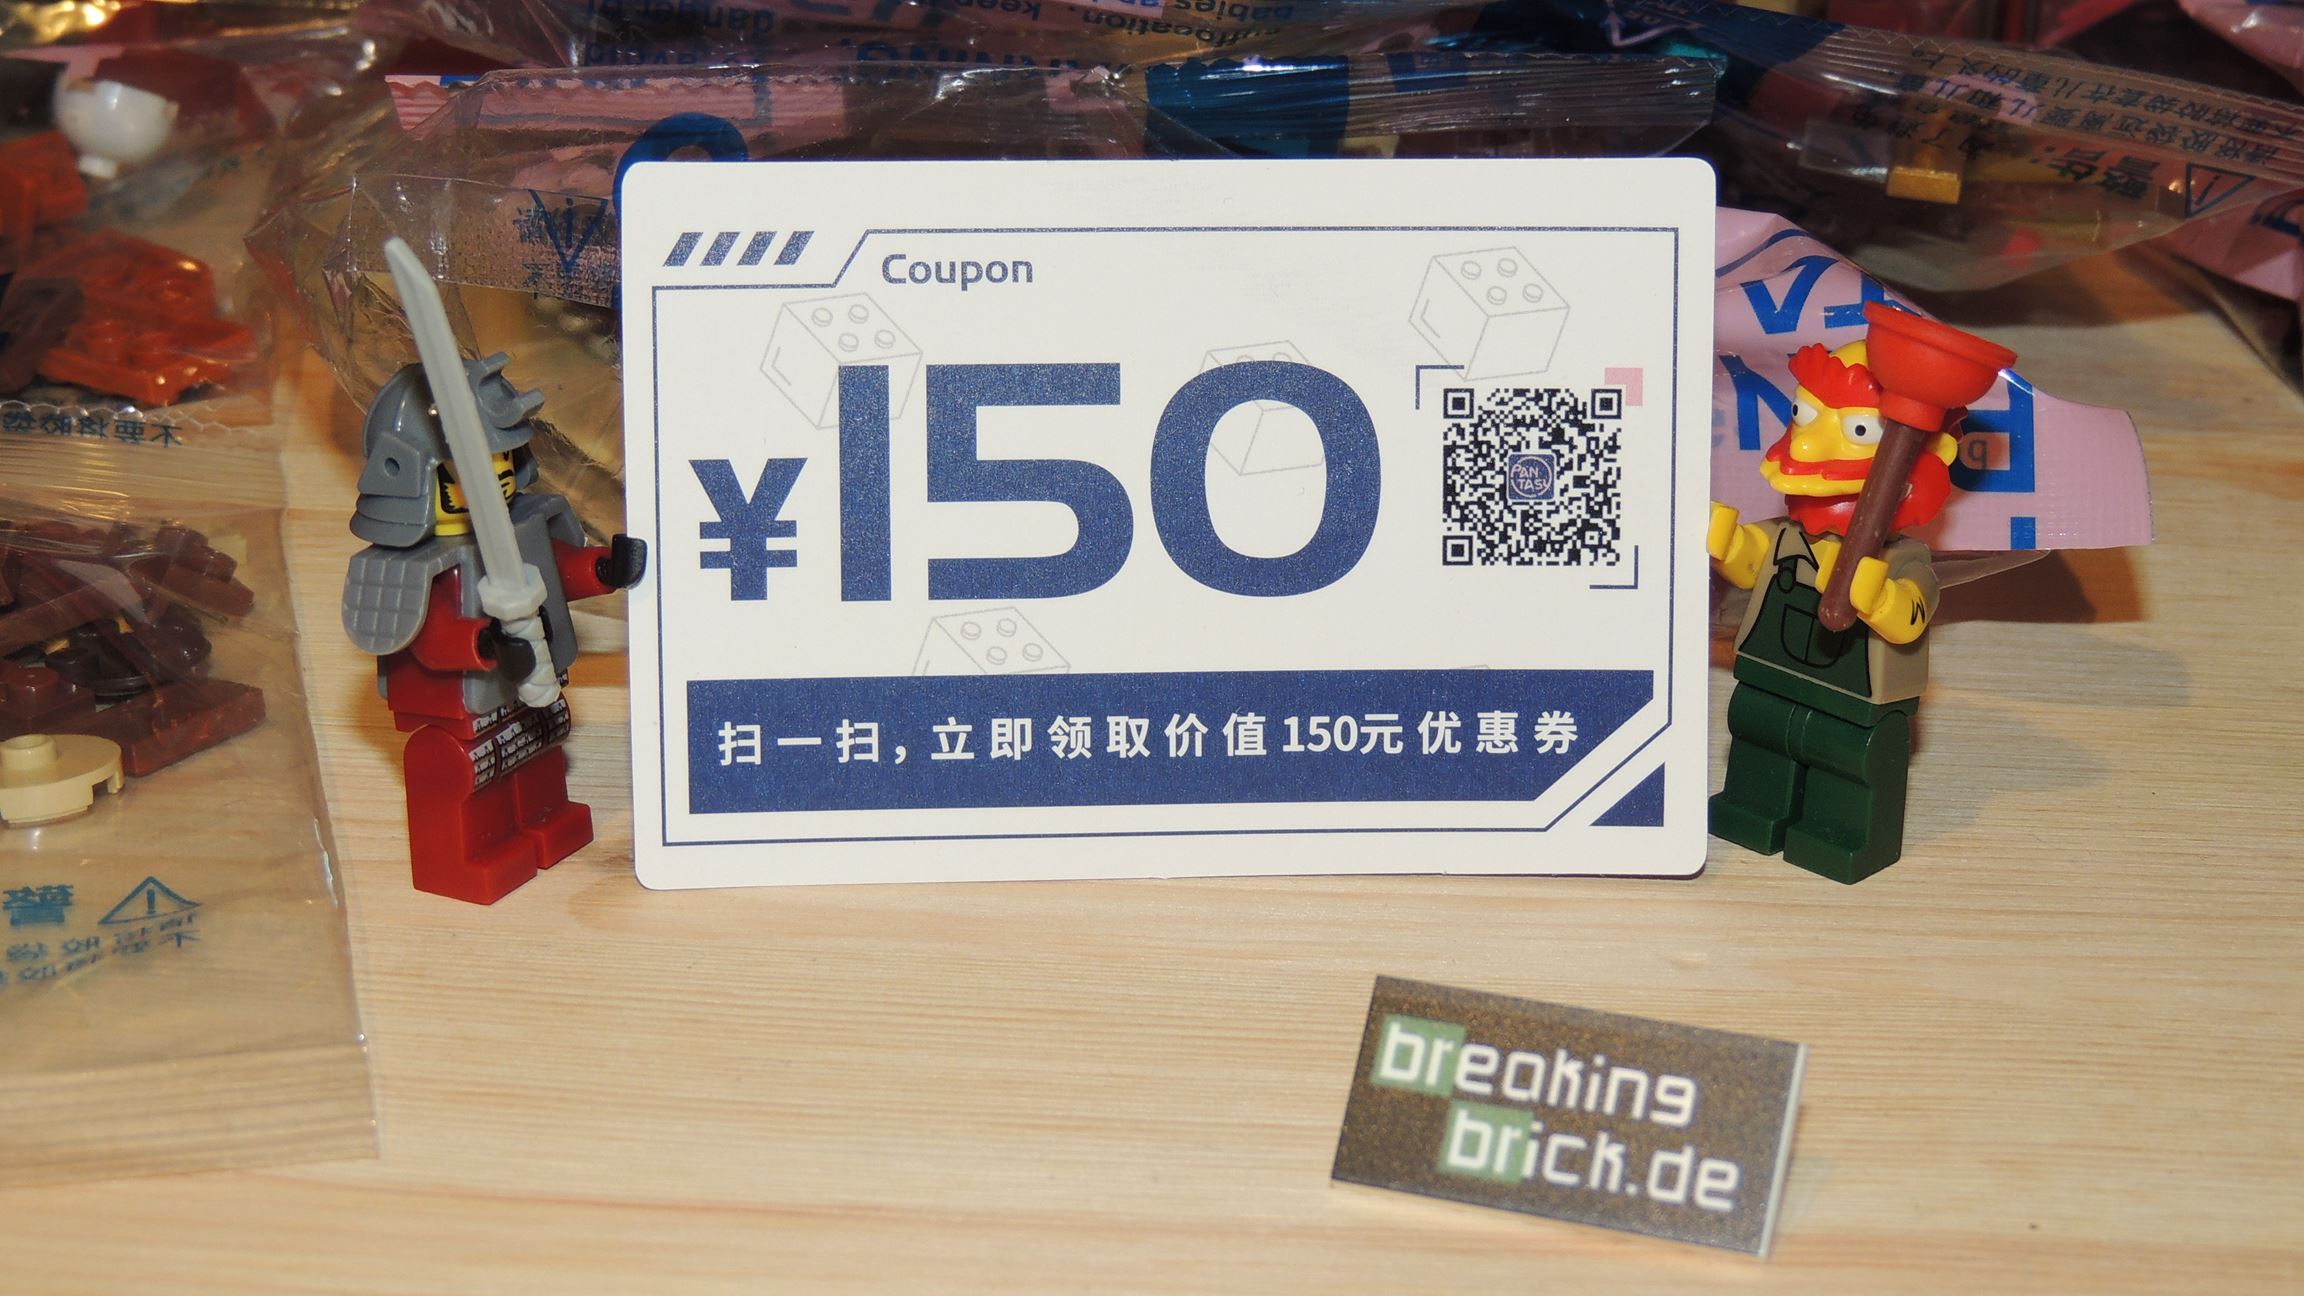 Für Käufer in China gibts 150 RMB Rabatt mit dem QR-Code.